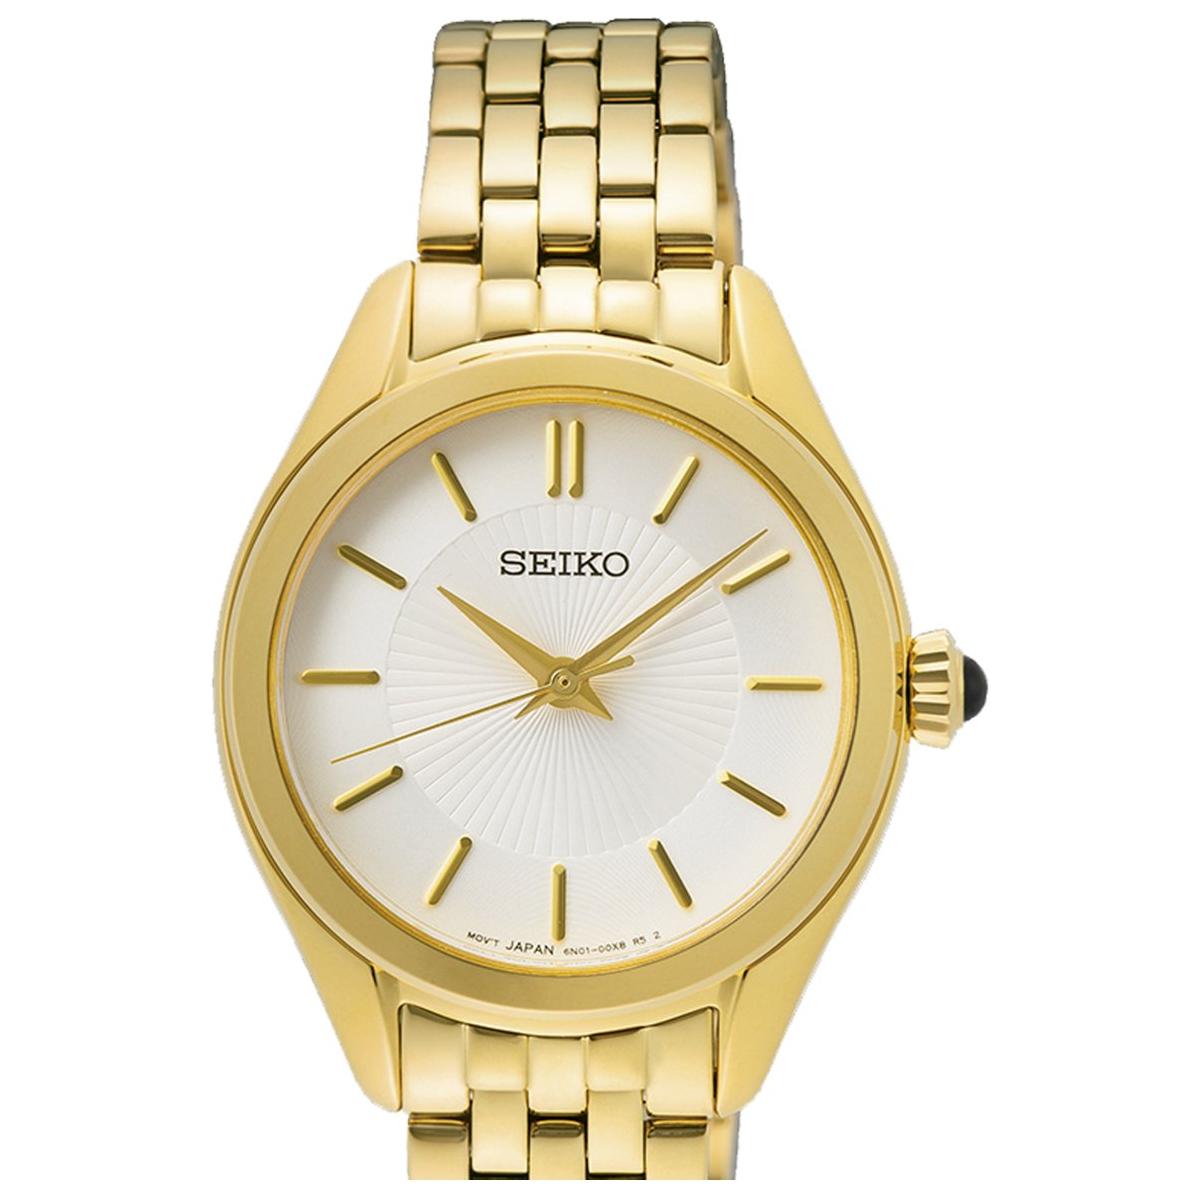 SEIKO SEIKO WATCHES Mod. SUR538P1 WATCHES seiko-watches-mod-sur538p1